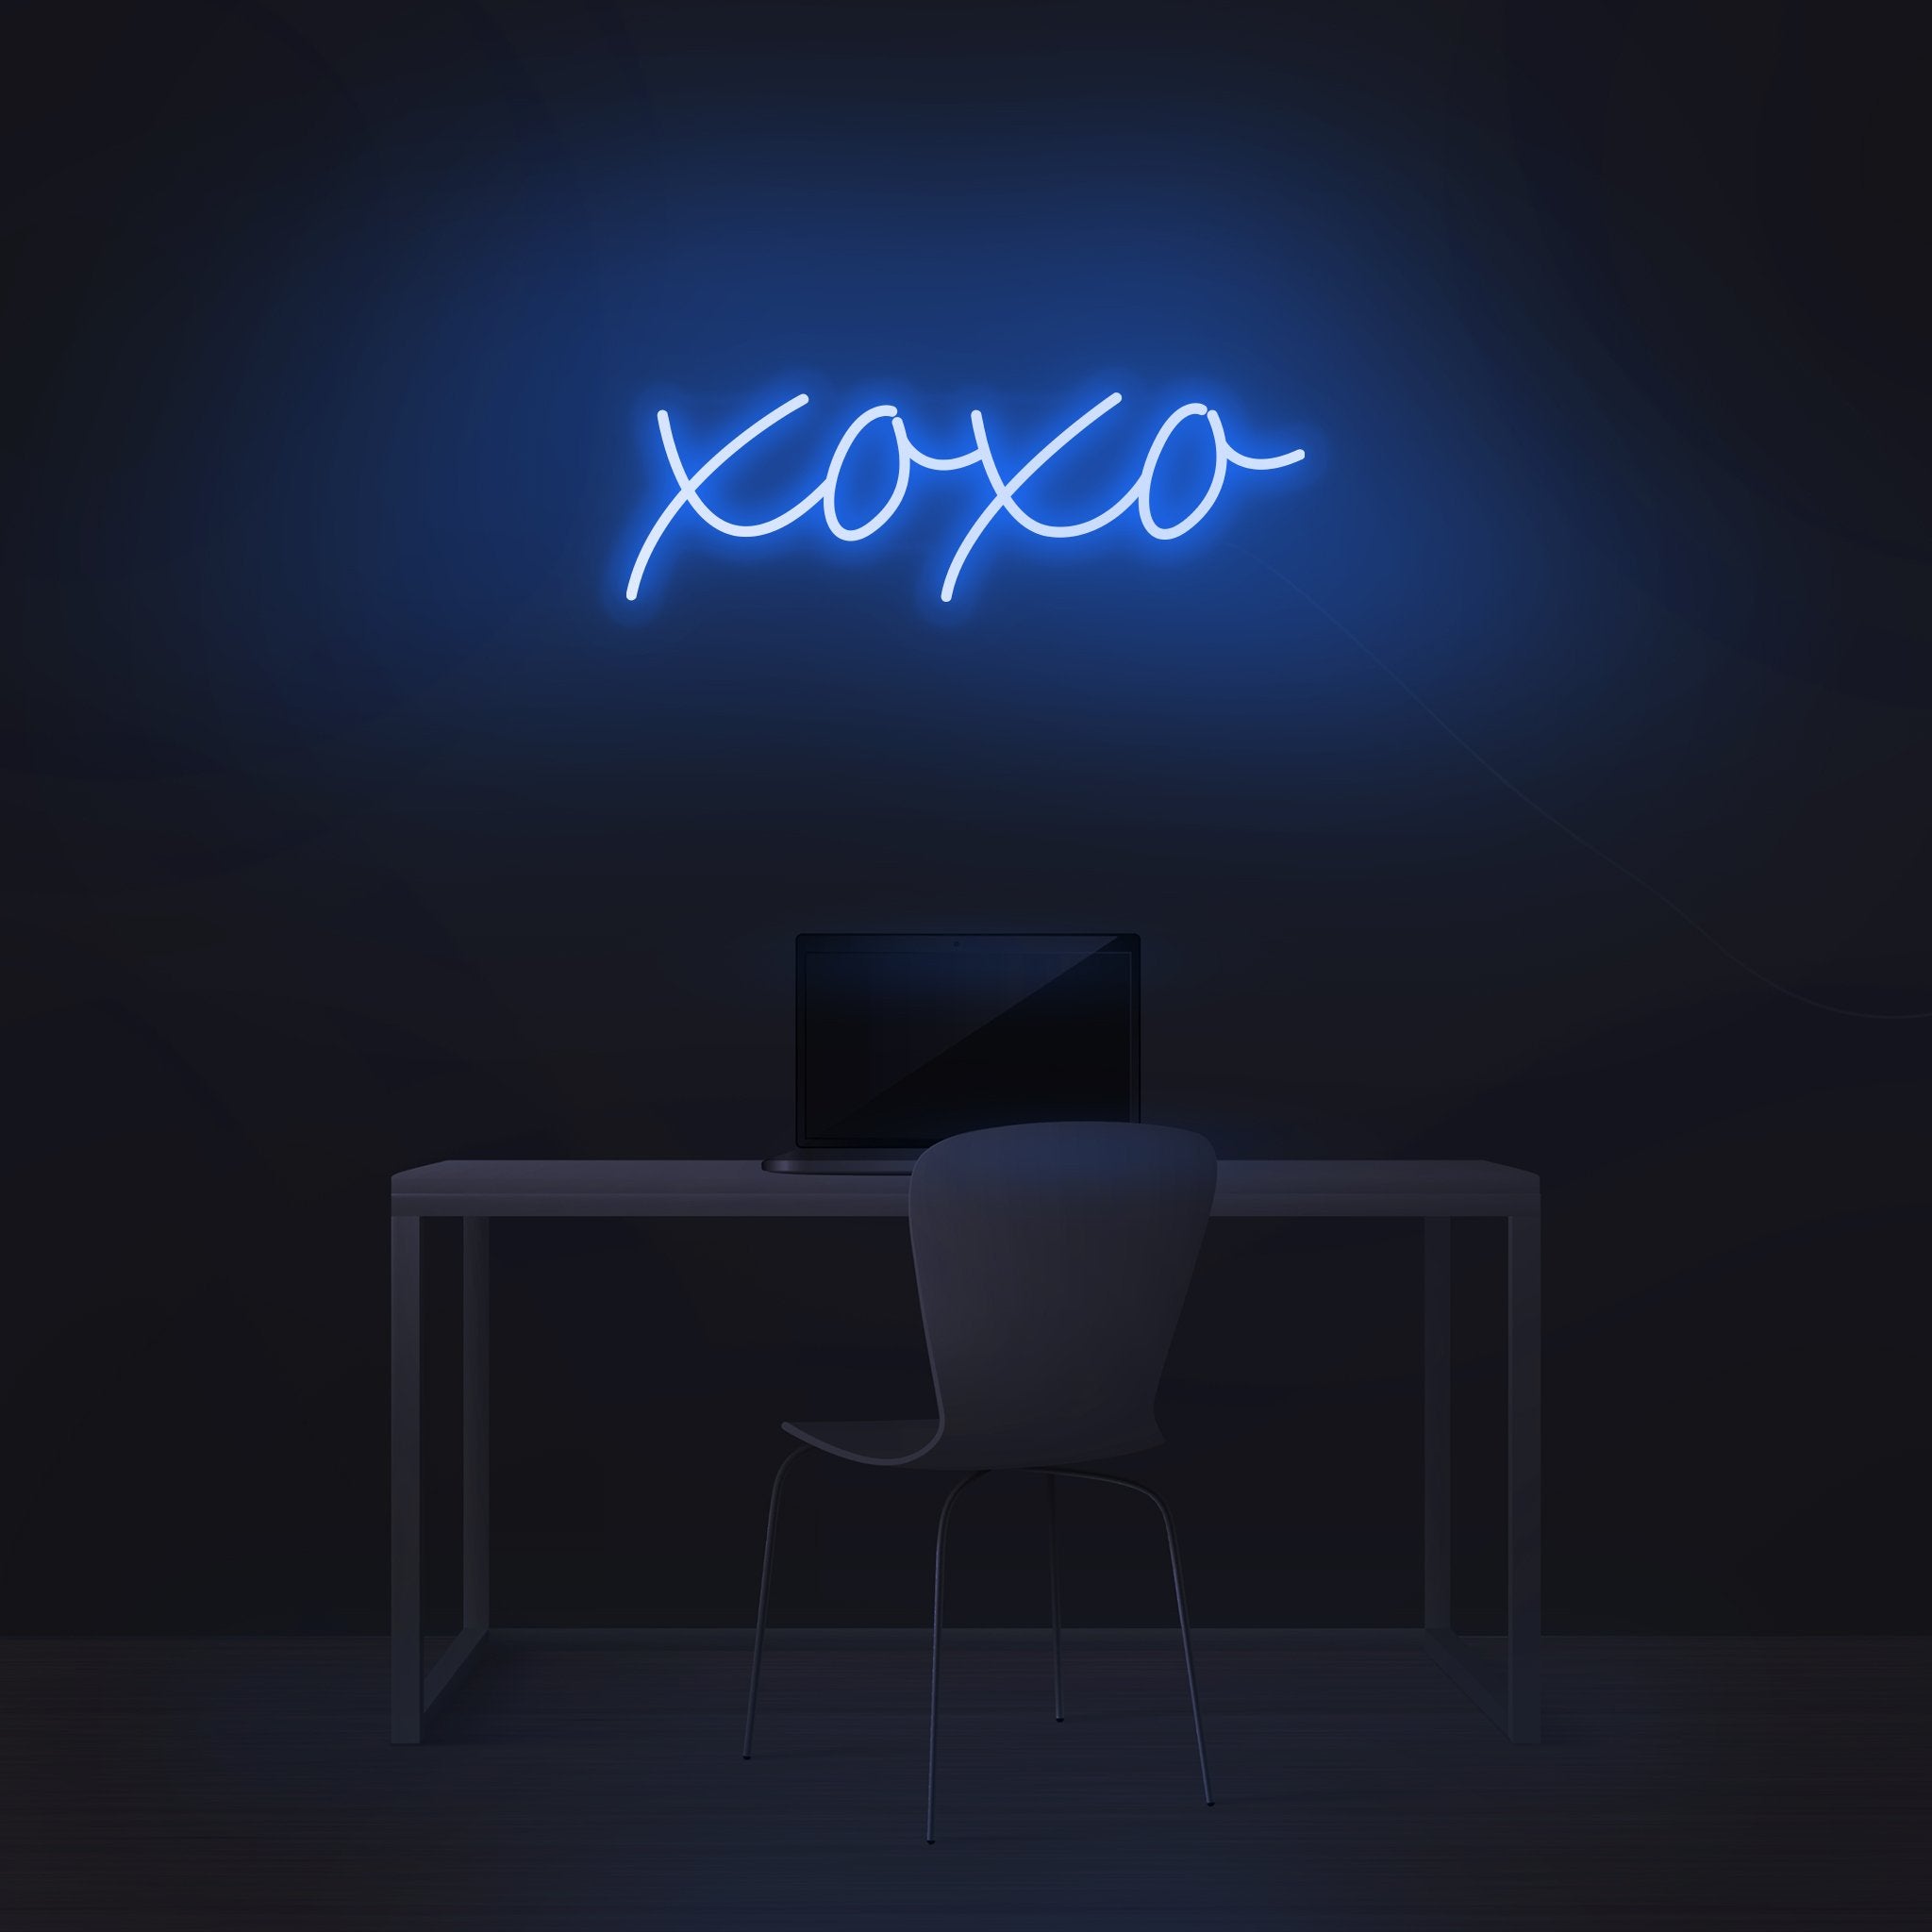 XOXO - NeonFerry